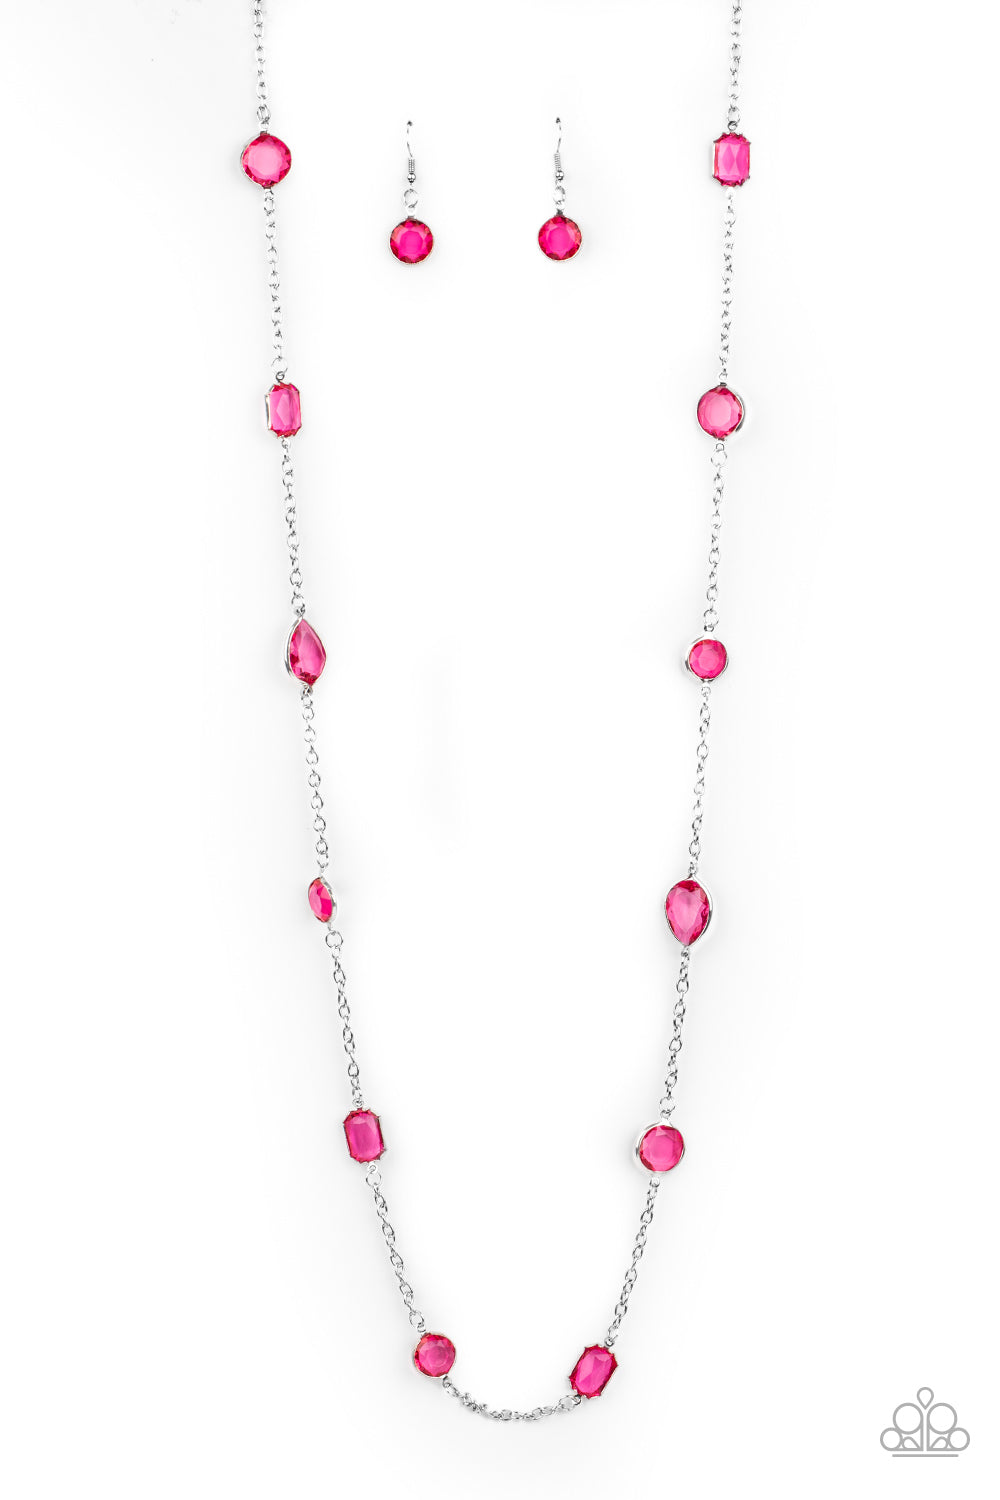 Paparazzi Necklace - Glassy Glamorous - Pink